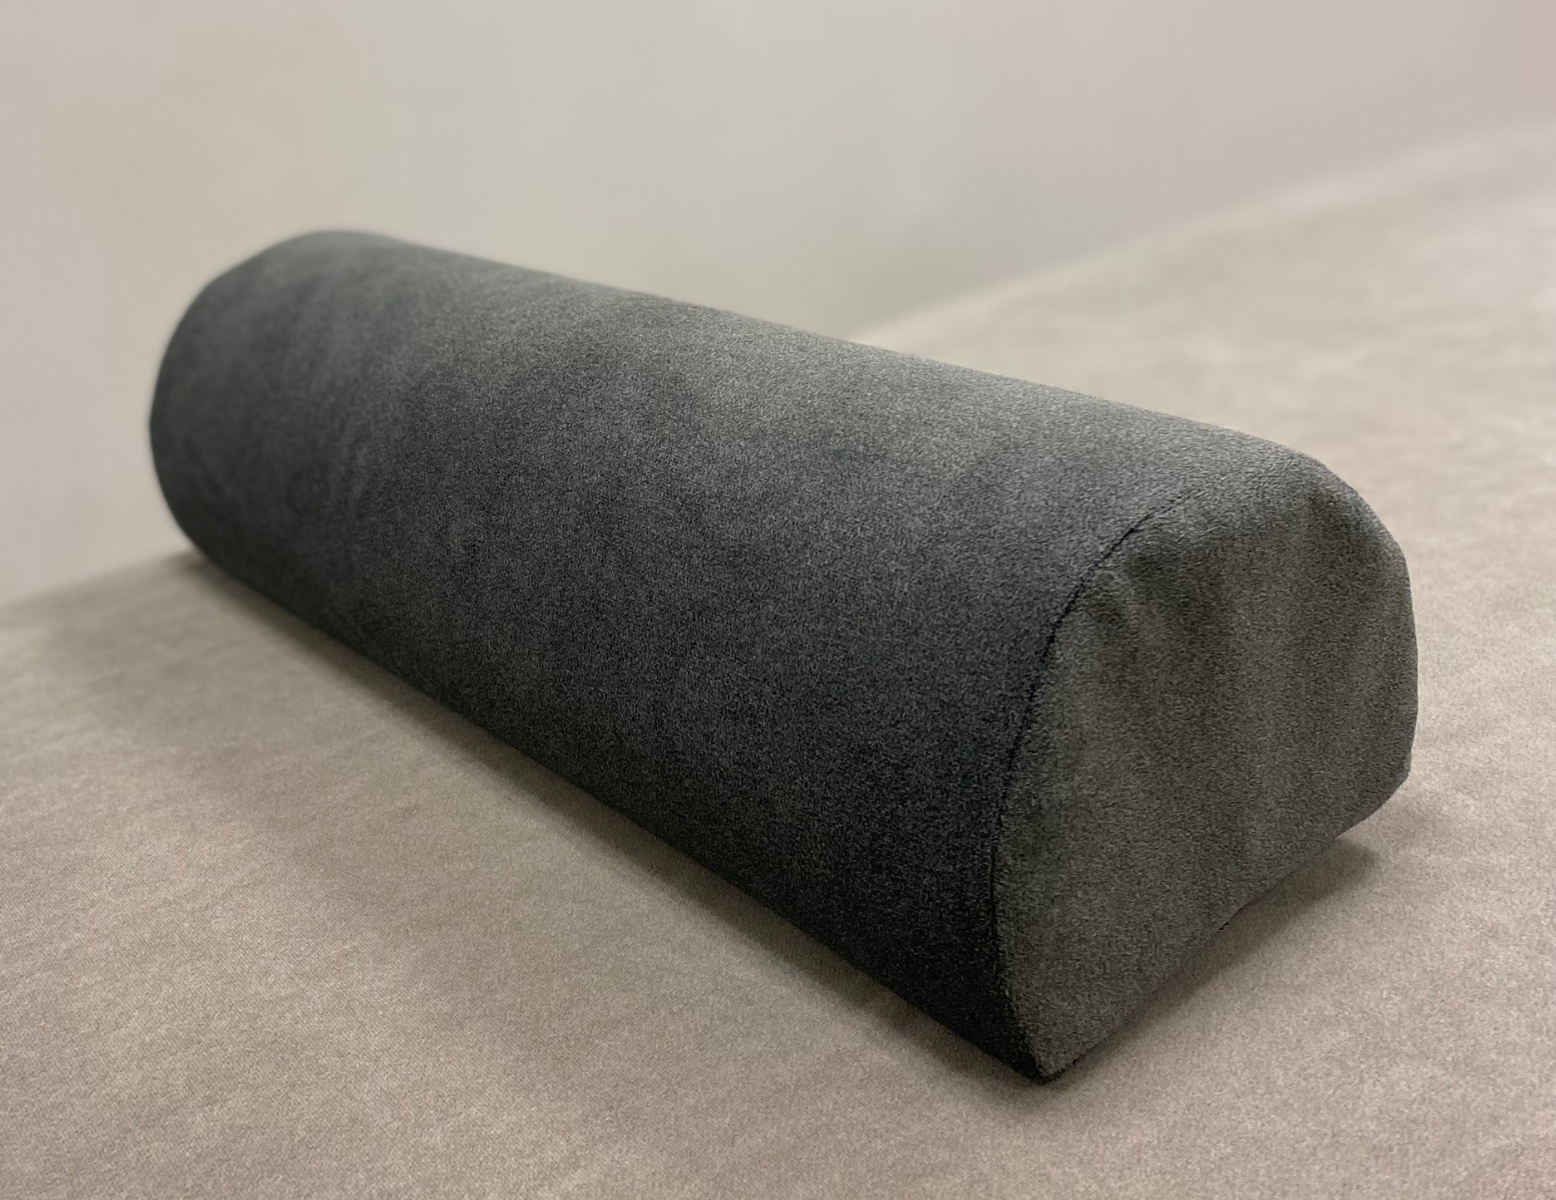 HygienePRO Rouleau genoux désinfectable - Soft Touch - gris foncé/charcoal